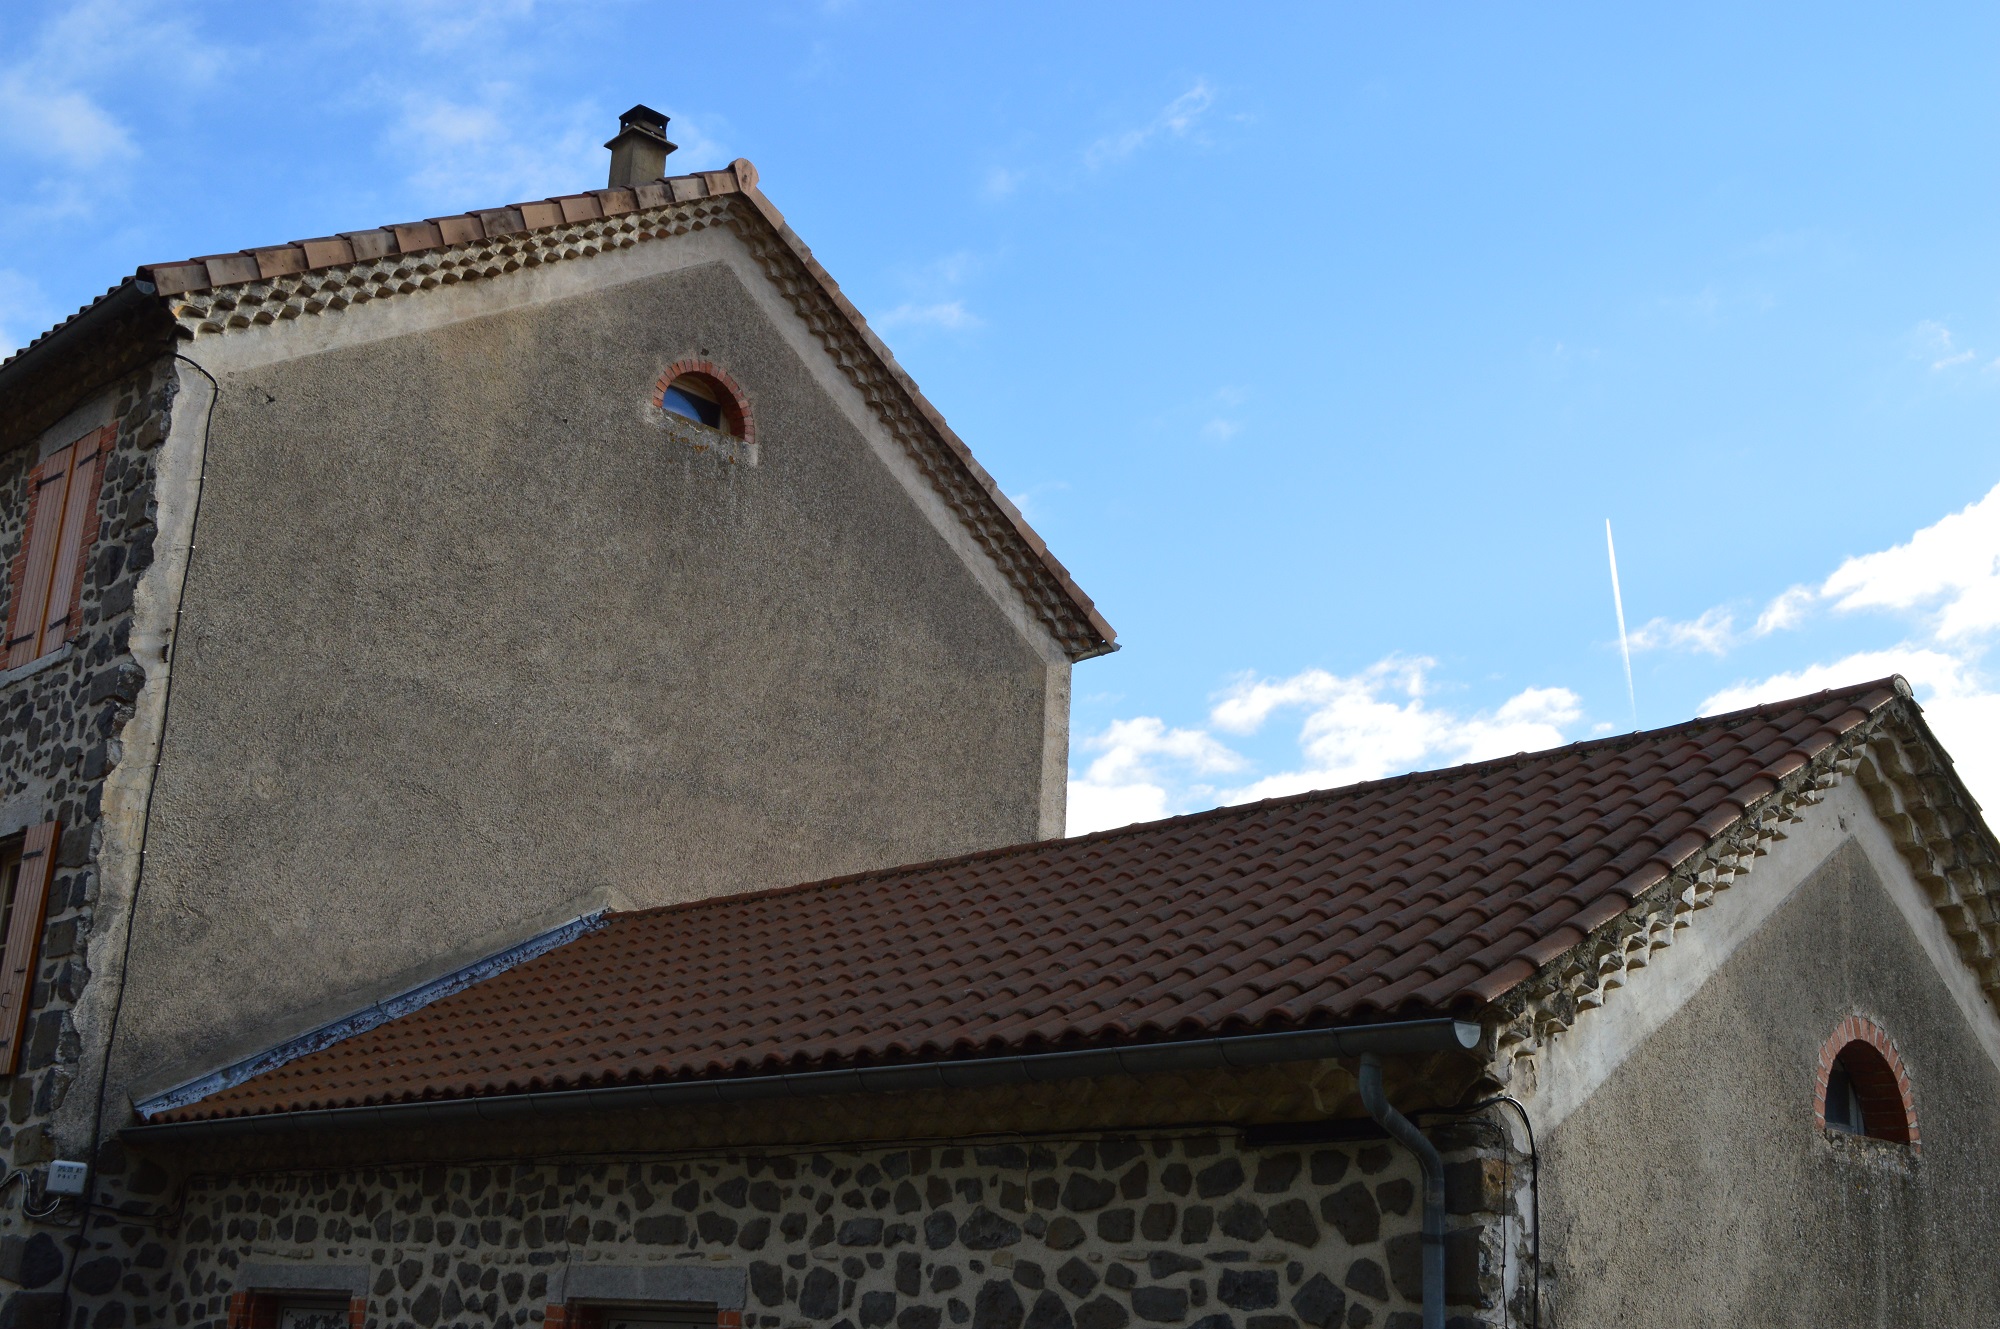 Réfection de la toiture de l'école de Saint Pons en tuiles mécaniques